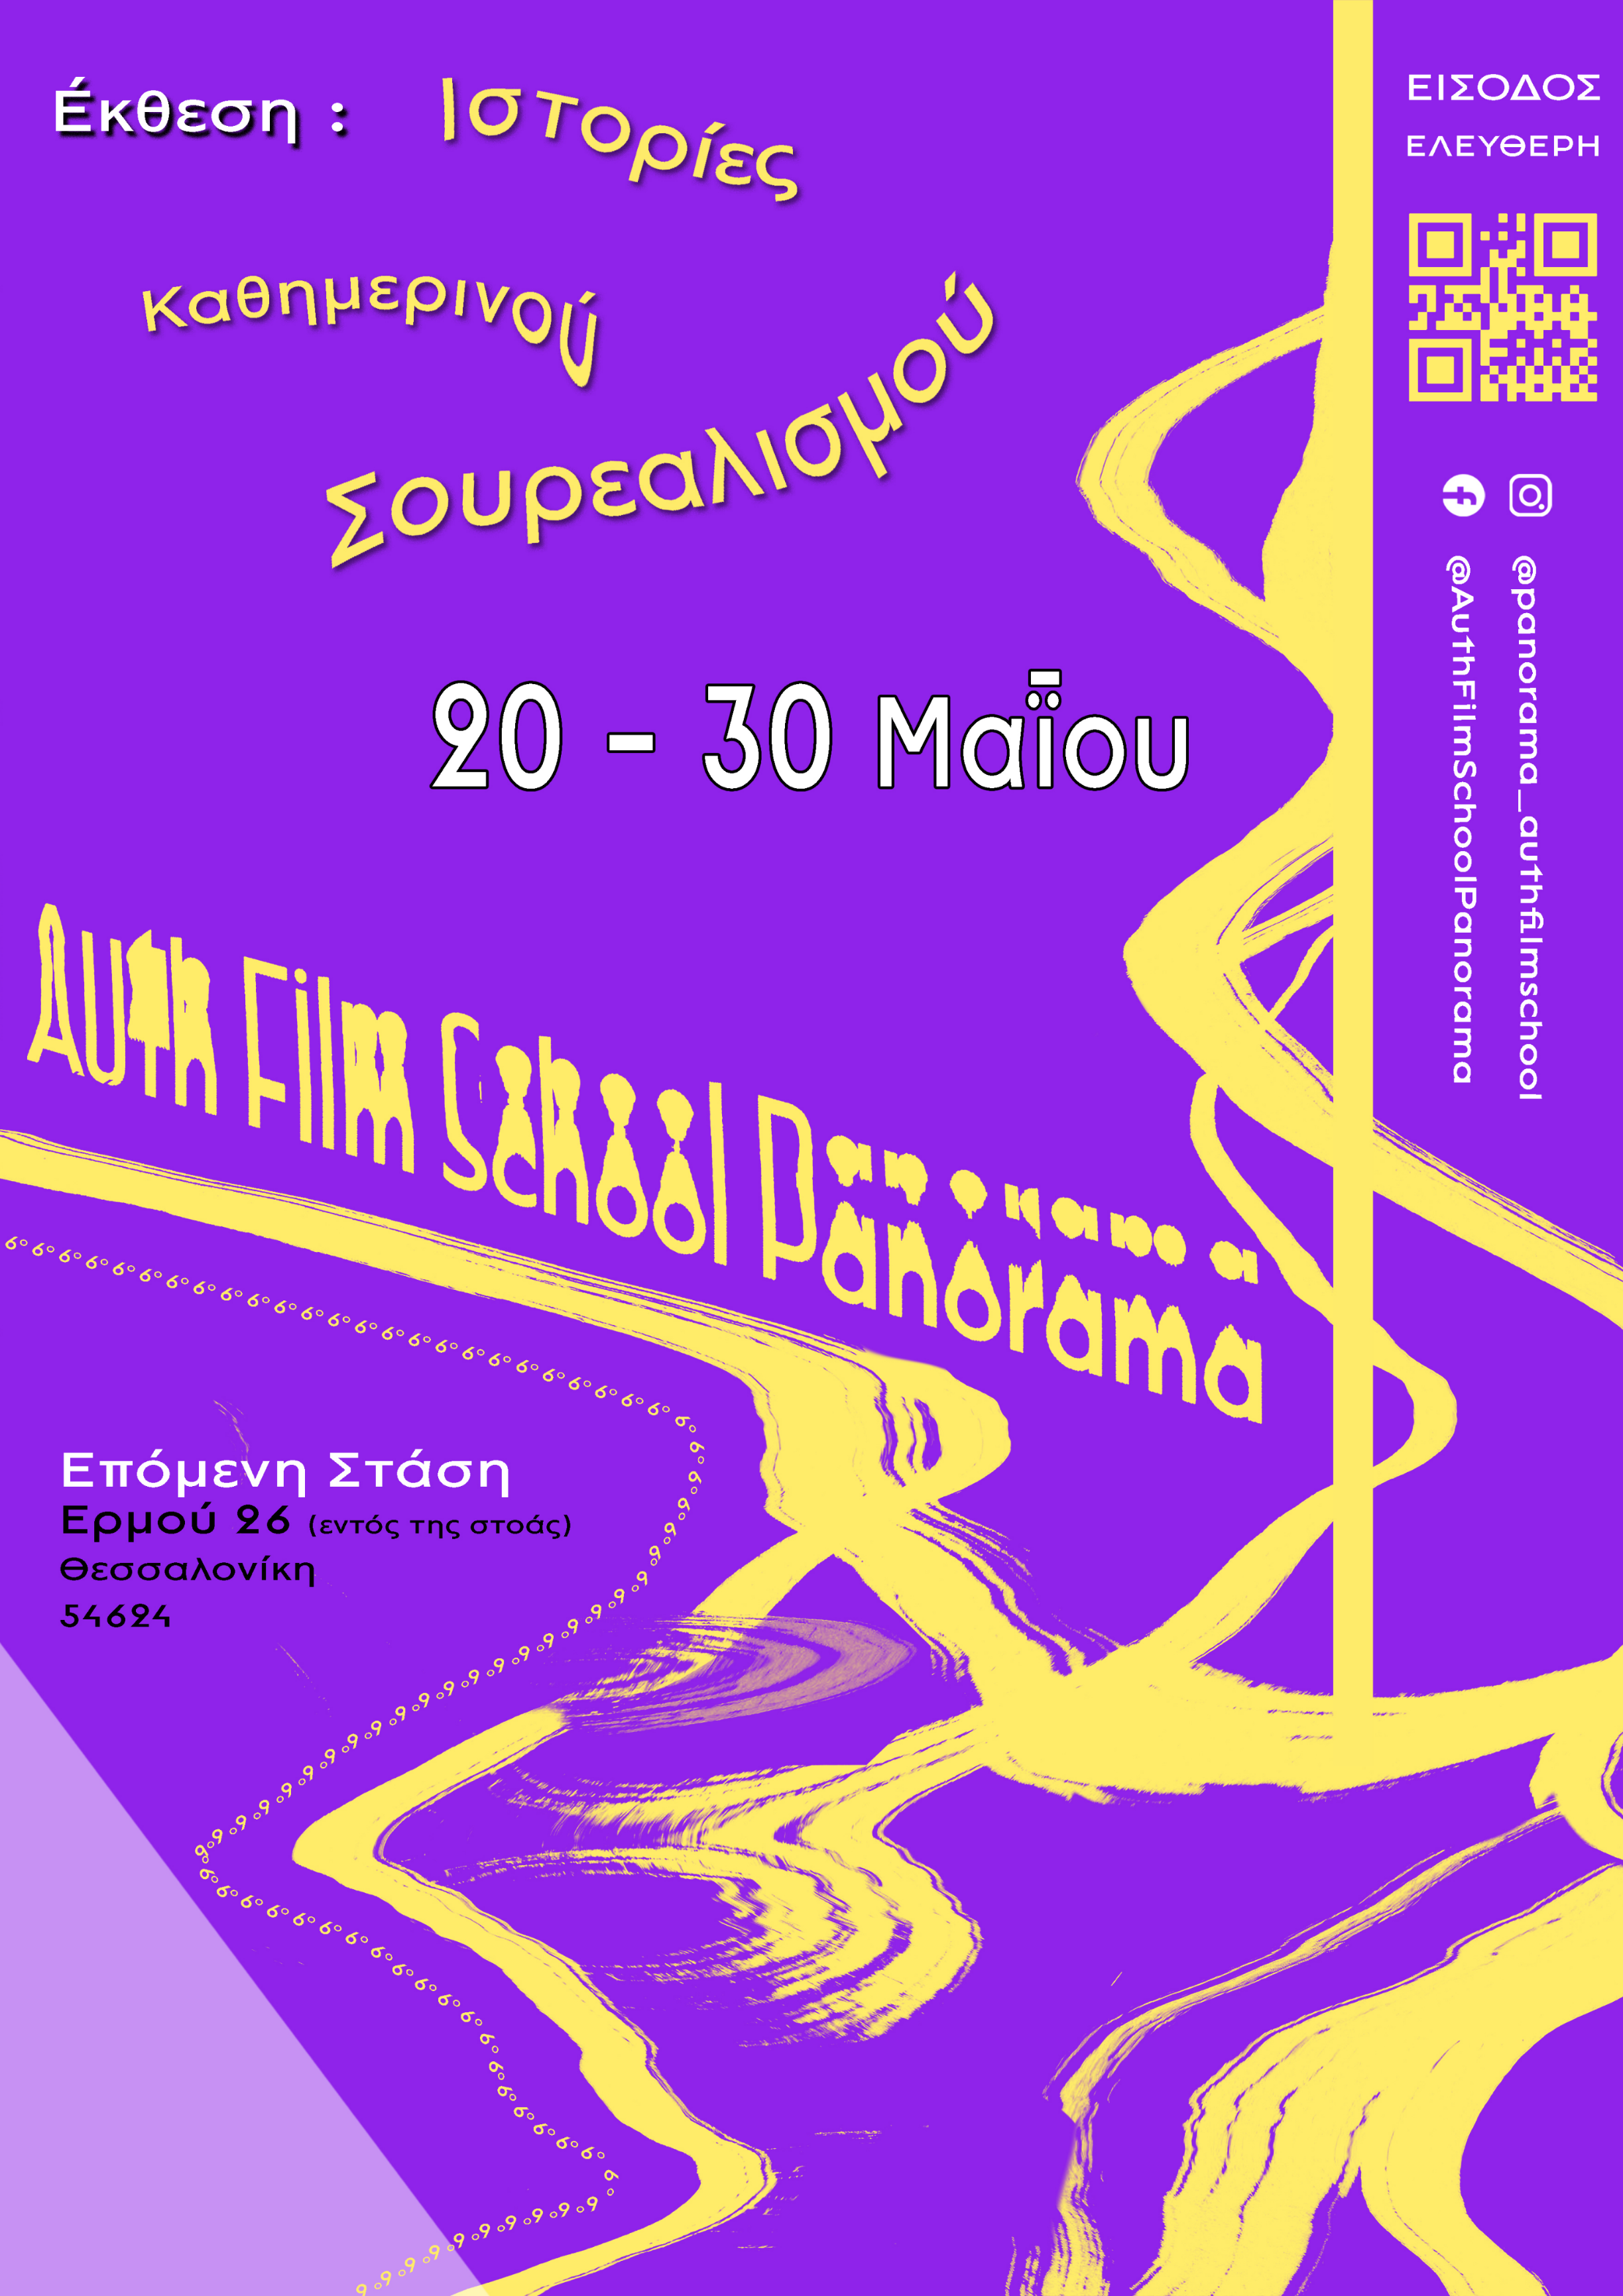 Auth Film School Panorama 6 Poster